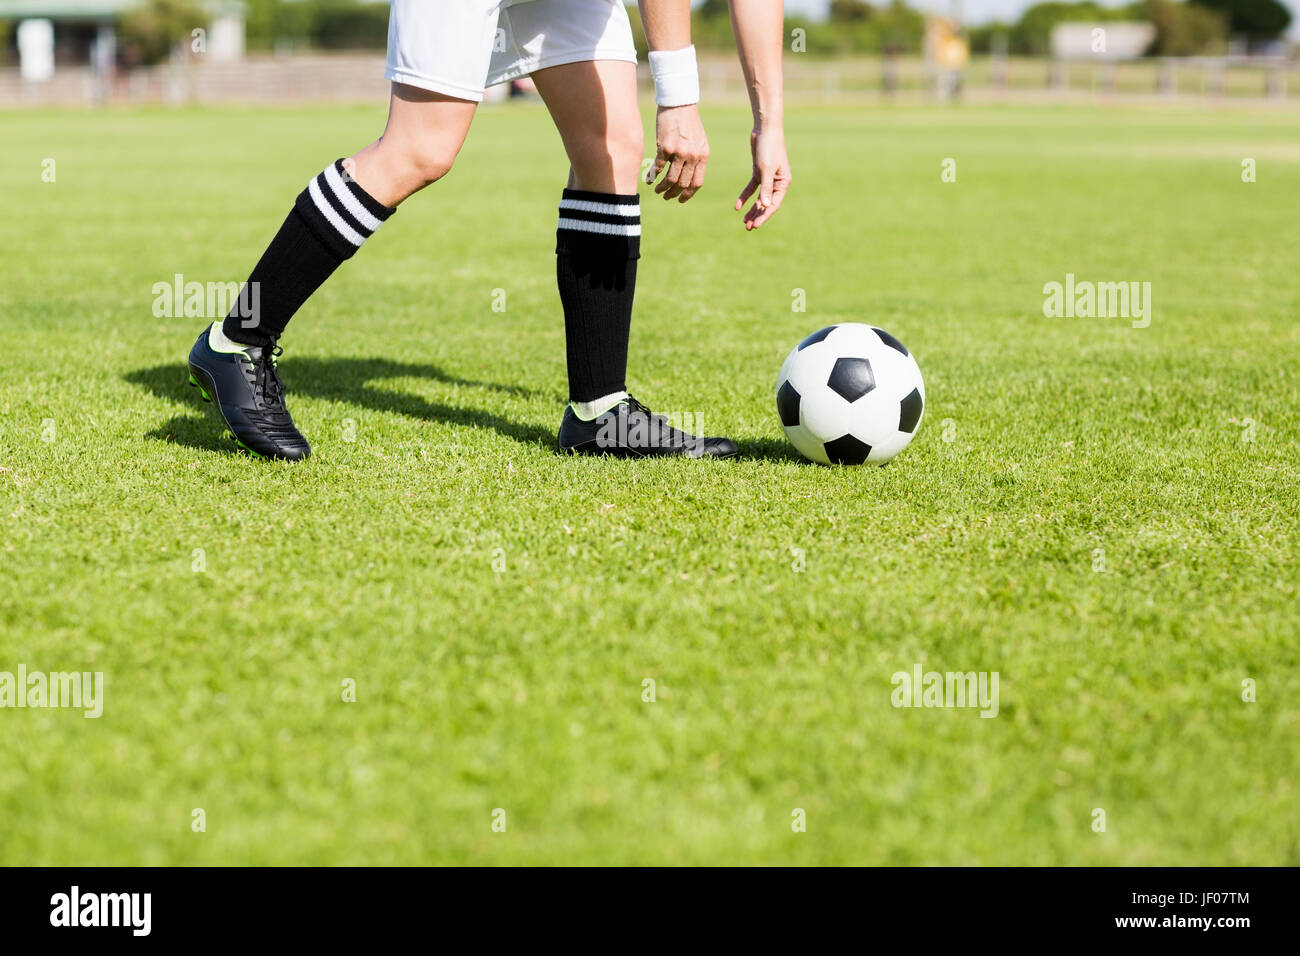 Football-Spieler den Ball aufnehmen Stockfotografie - Alamy